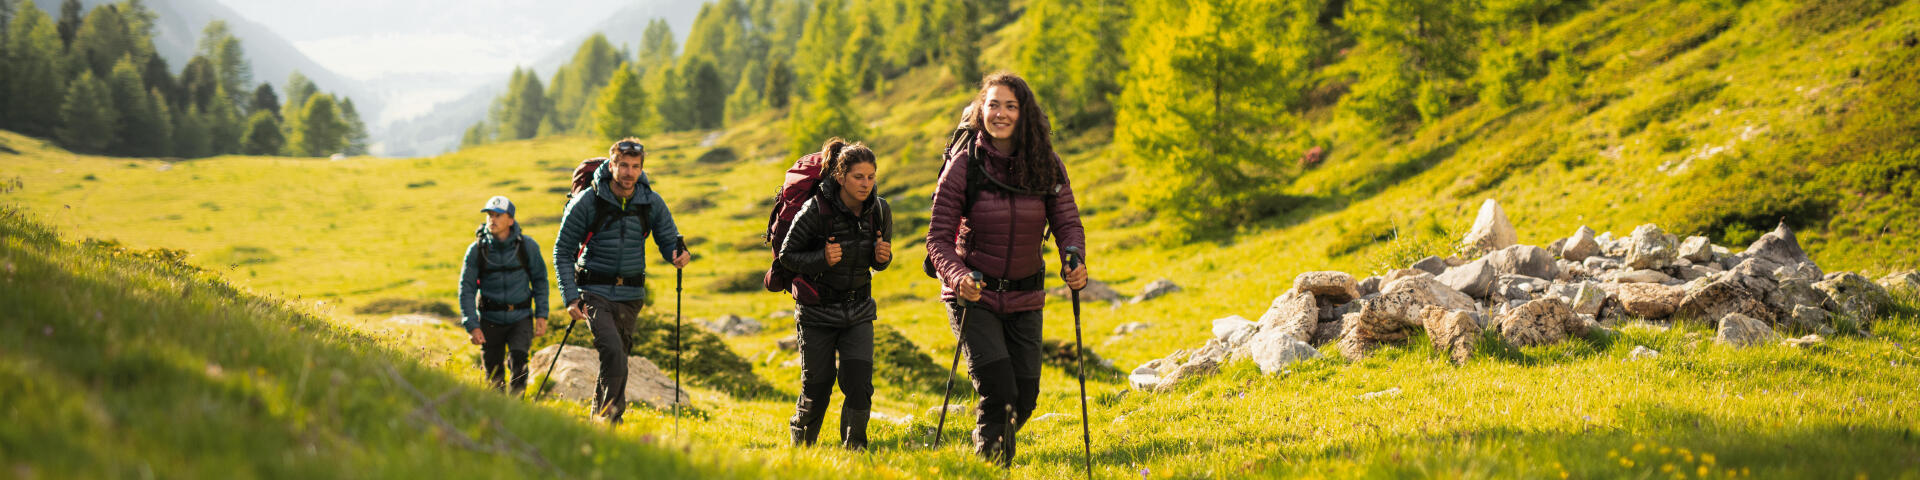 Diferencia entre trekking y senderismo | Decathlon